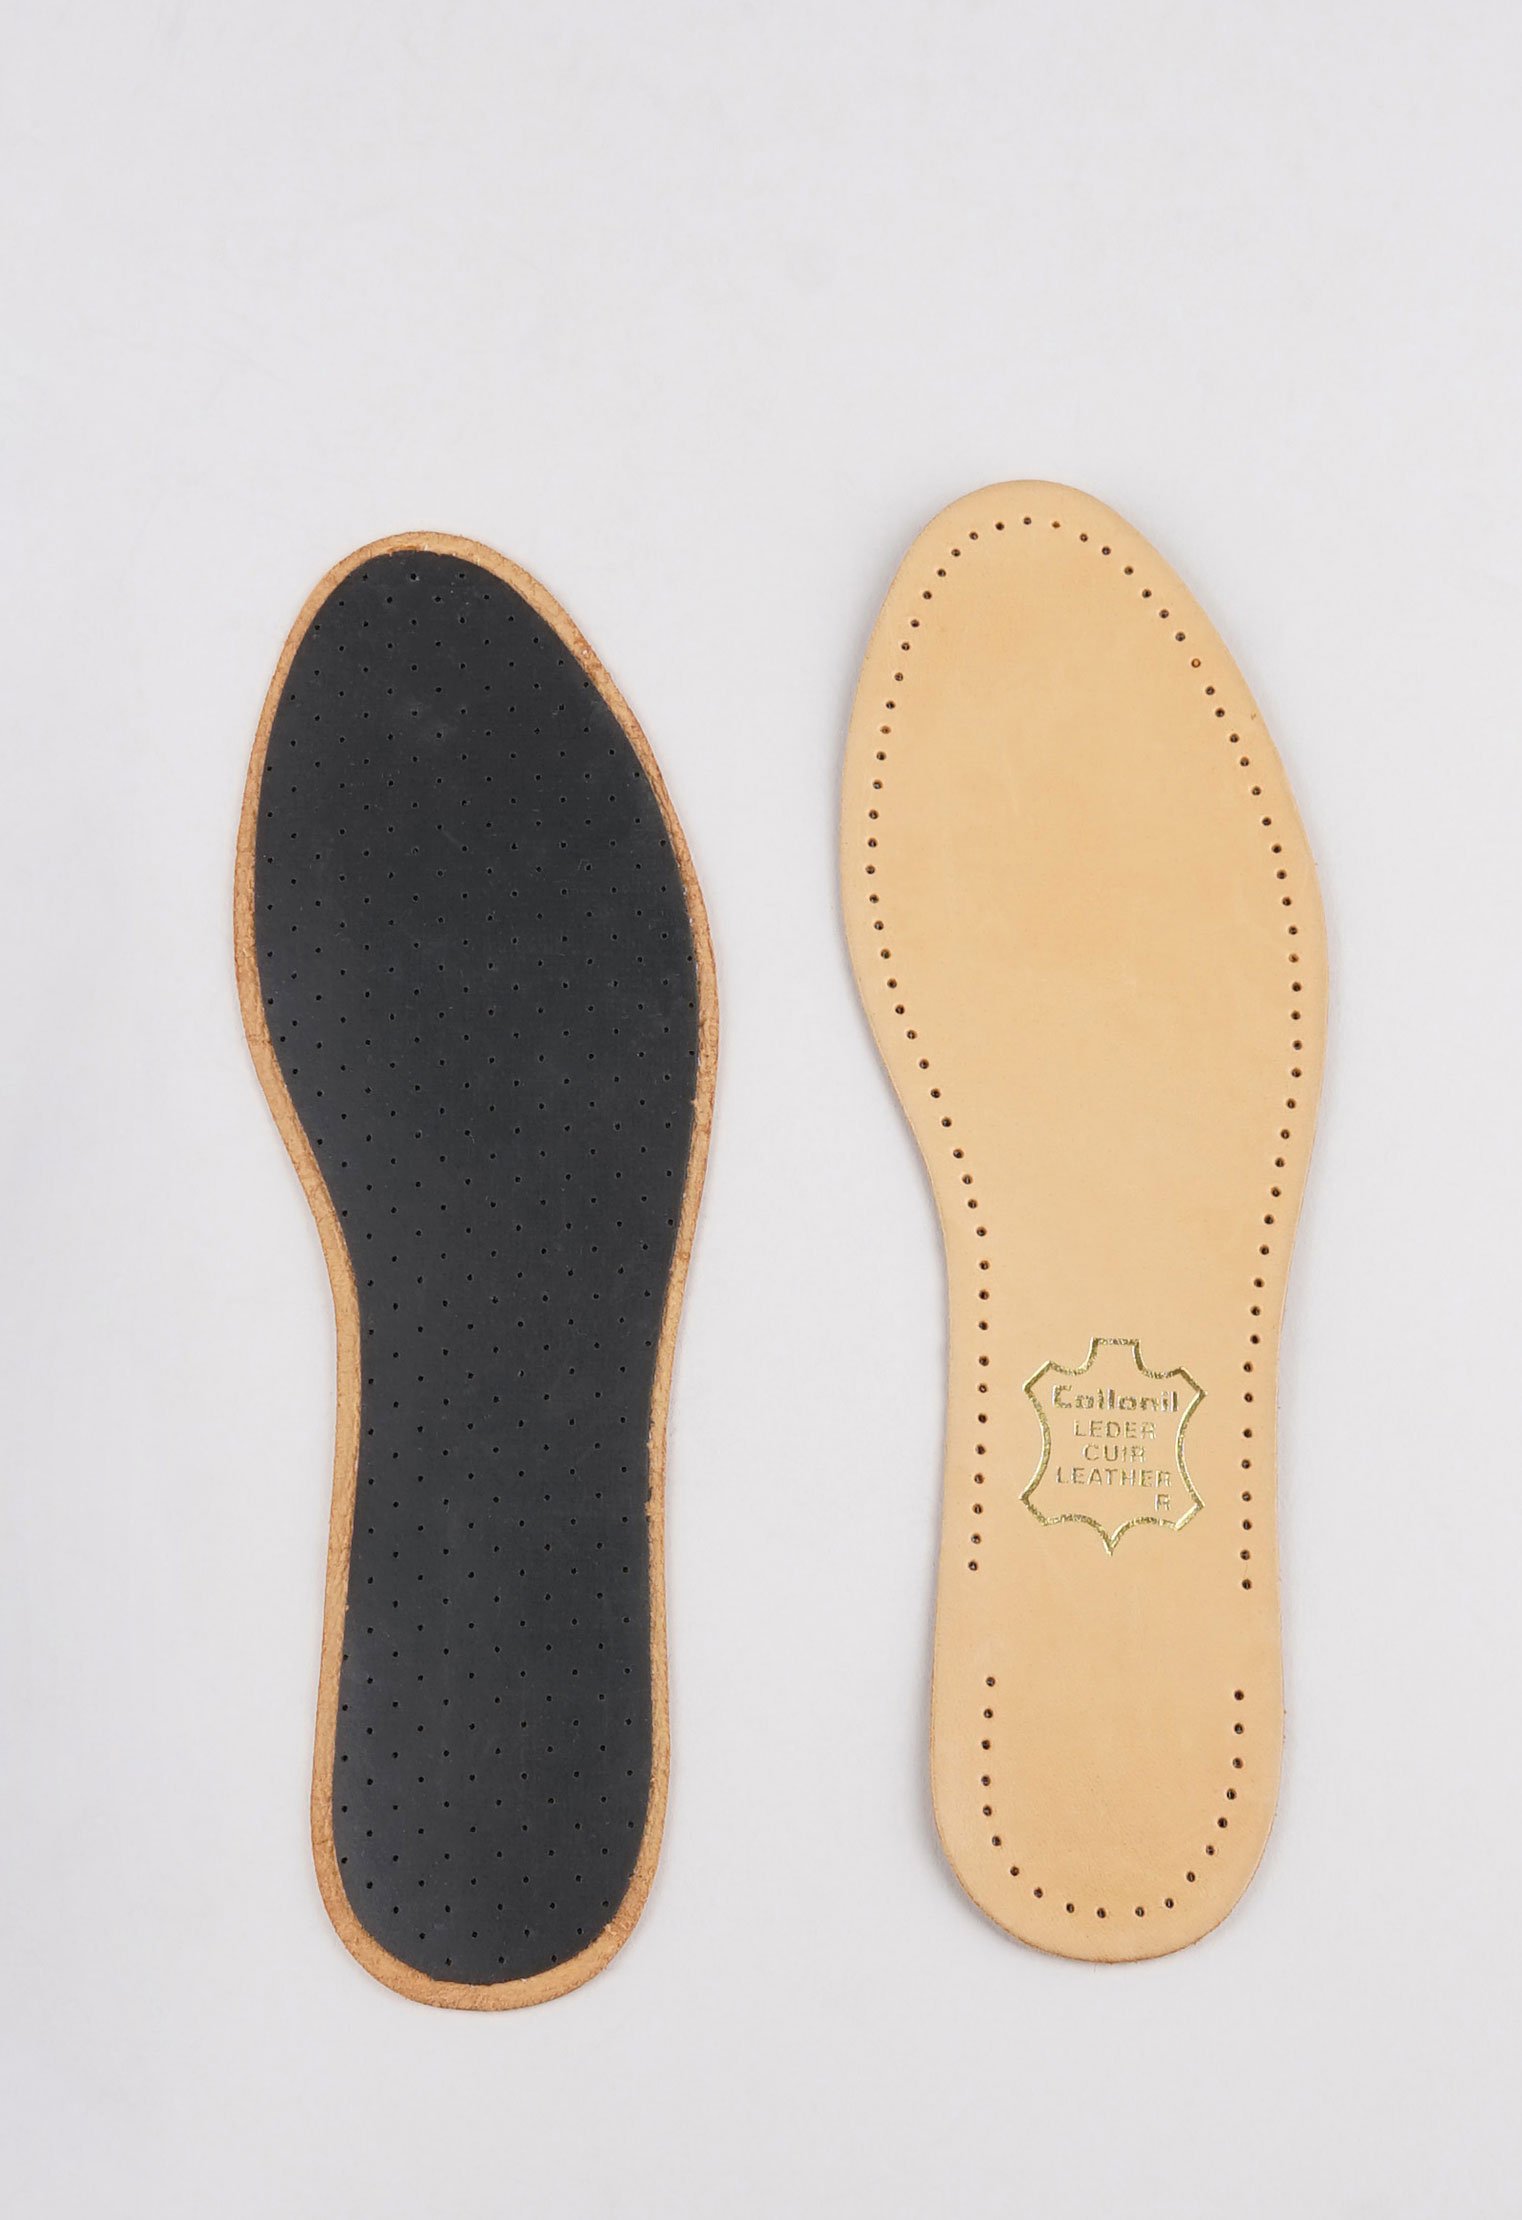 Стельки и вкладыши 20-1547 Стельки Luxor /р.39/ (Размер: 39) стельки для обуви collonil luxor размер 39